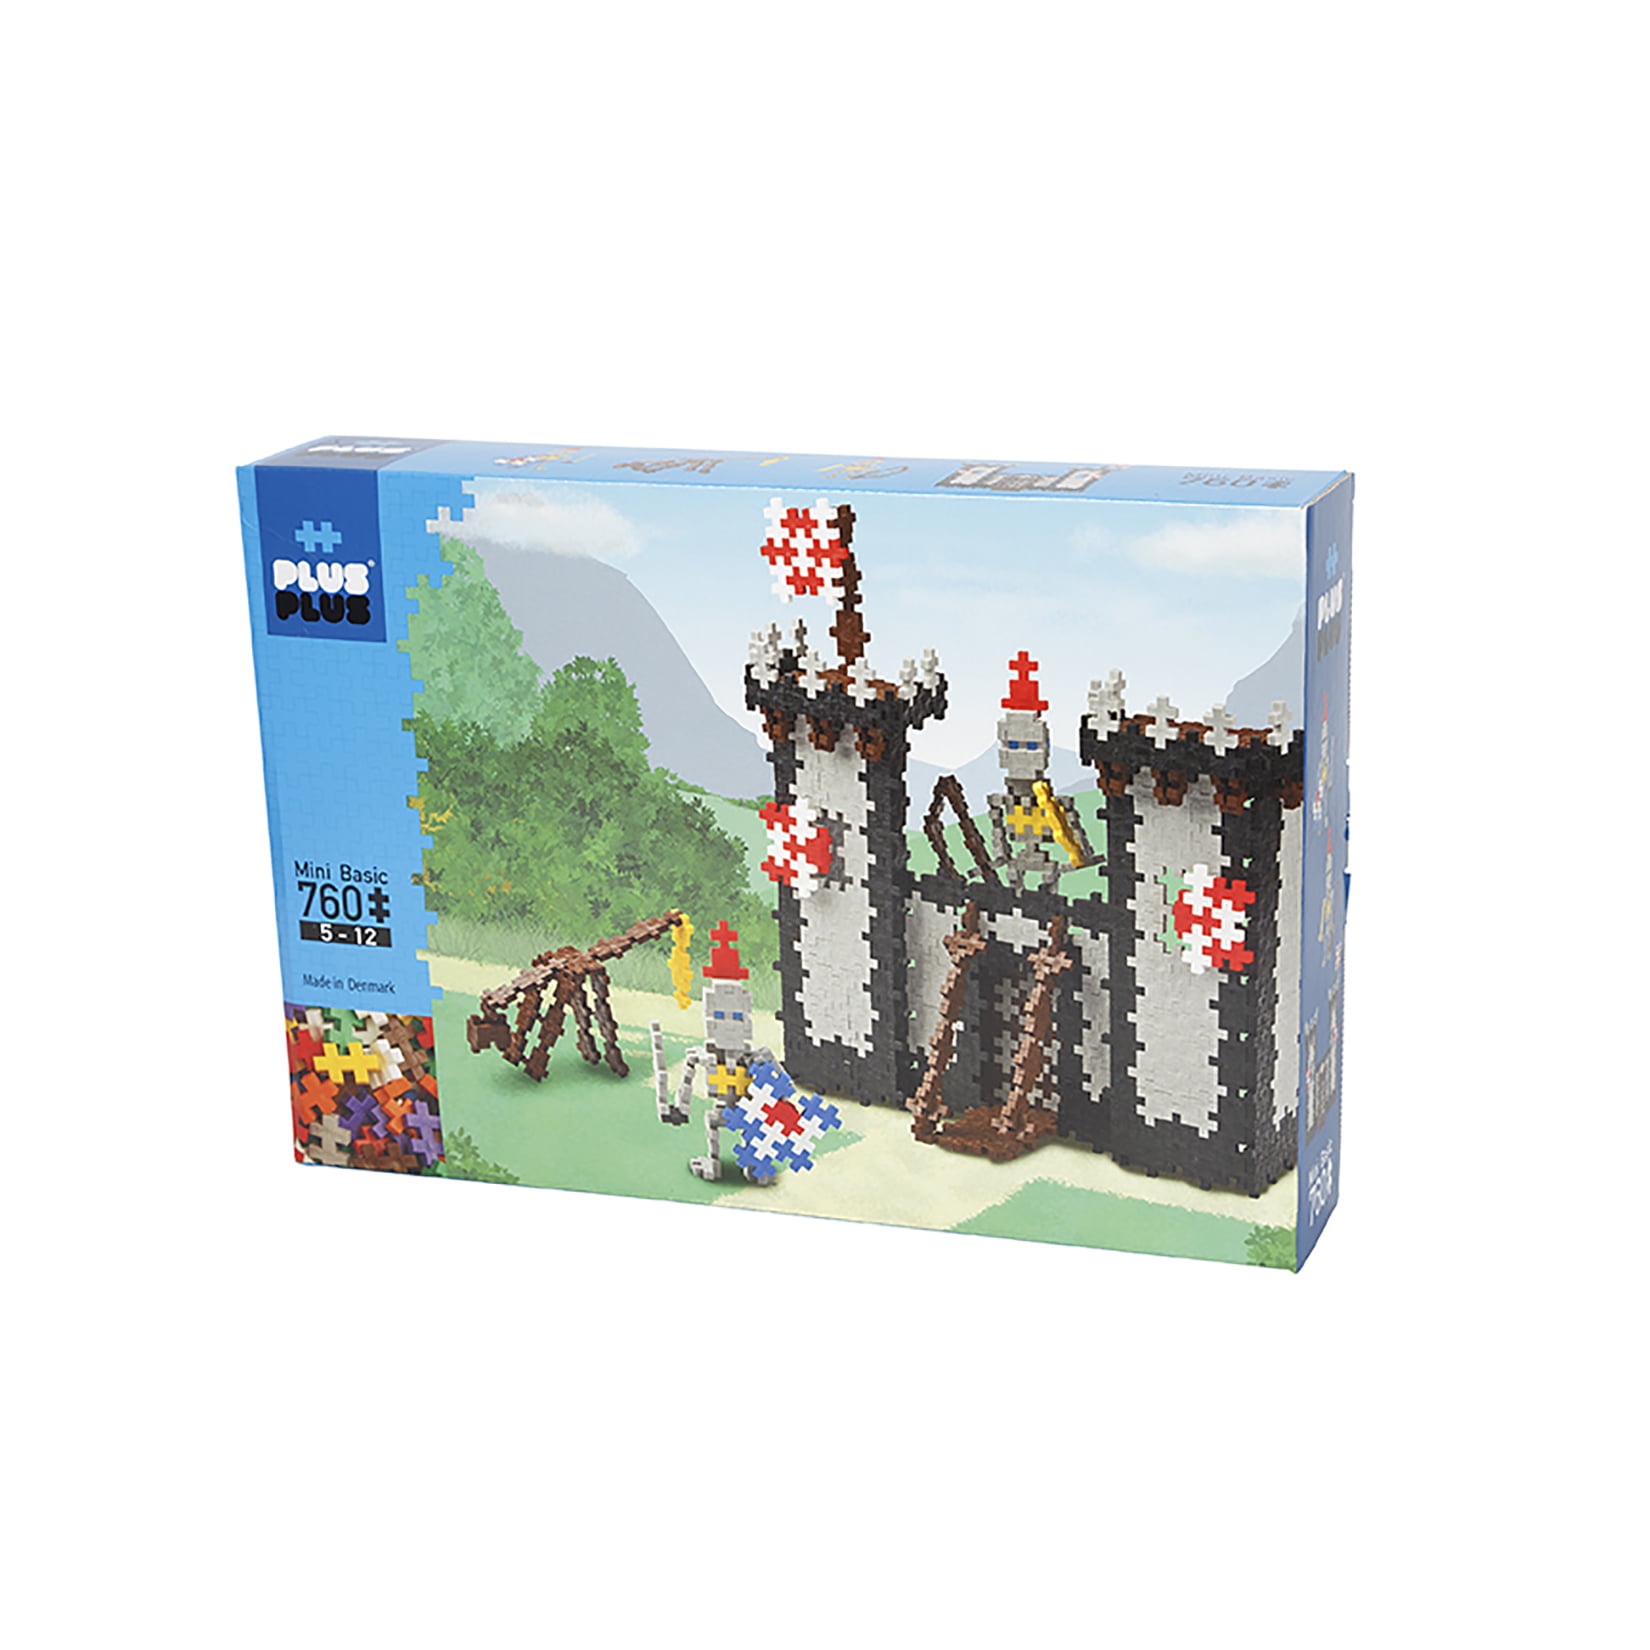 Puzzle Piece-Shaped Building Toy PLUS PLUS 760 Piece KNIGHT'S CASTLE Set 